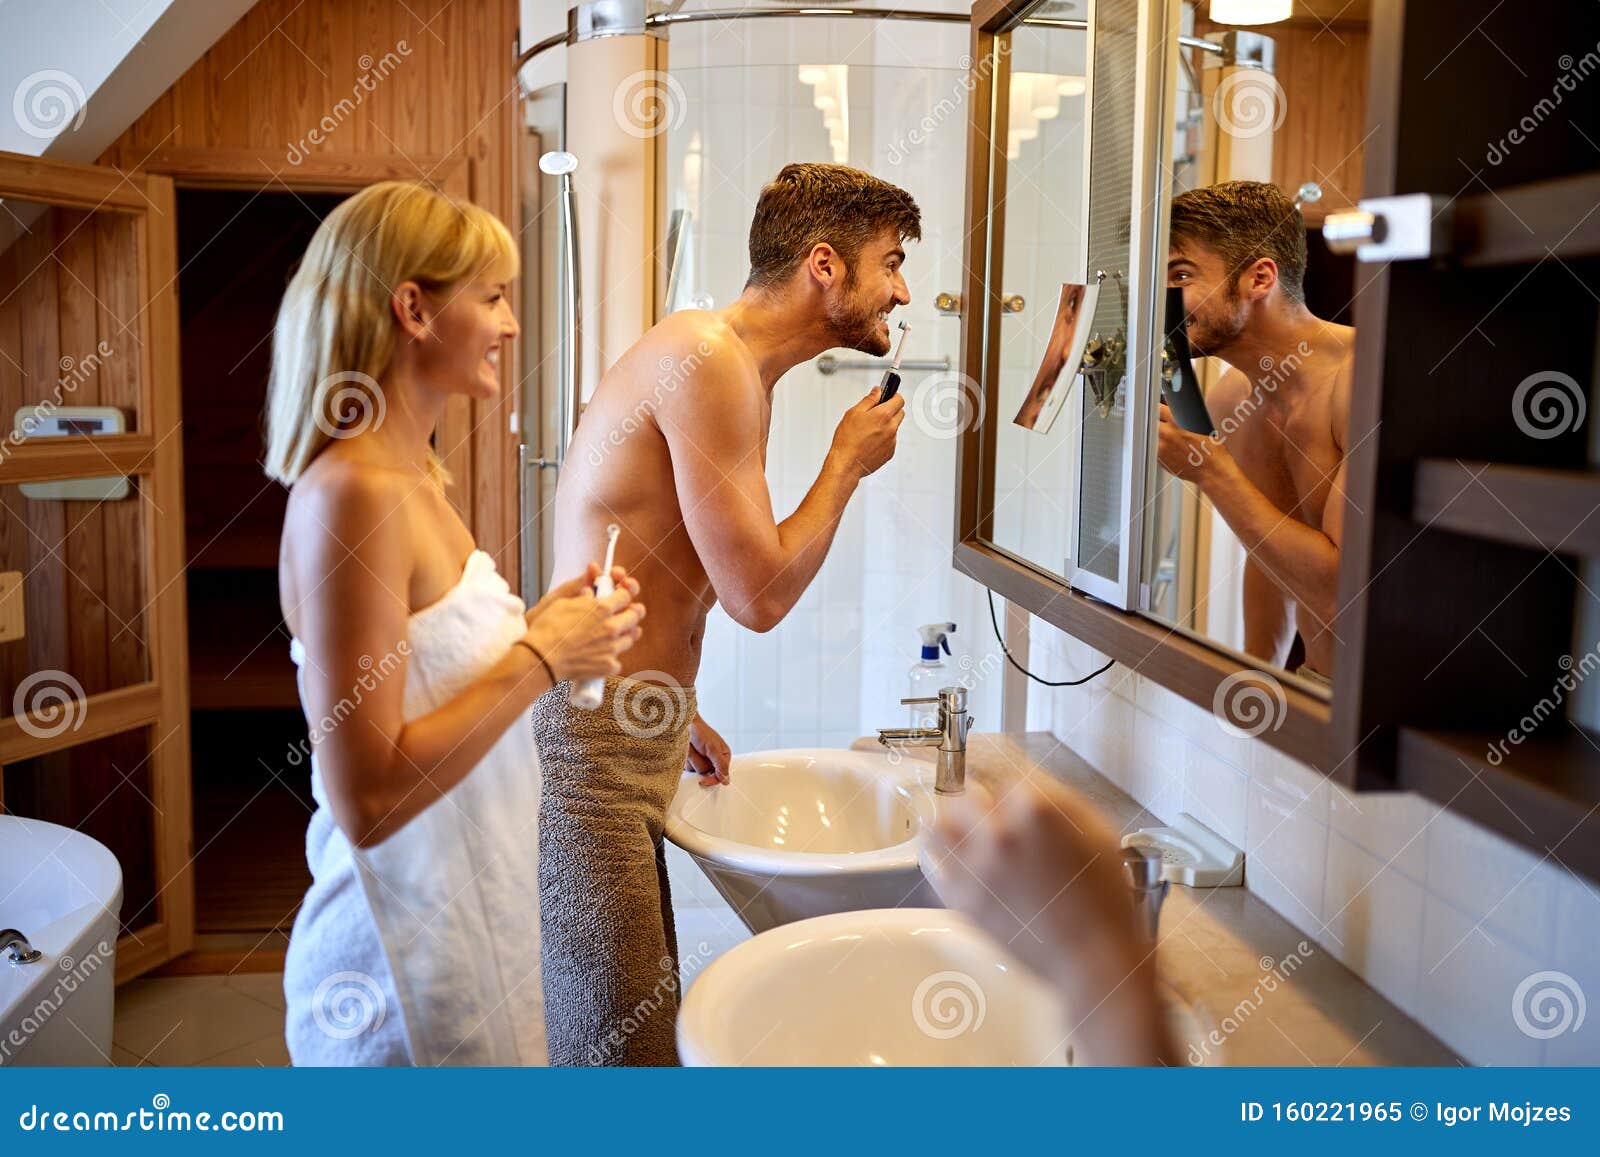 Жена с другом в ванной. Пара перед зеркалом в ванной. Двое в ванной. Пара чистит зубы в ванной. Чистка ванной паром.